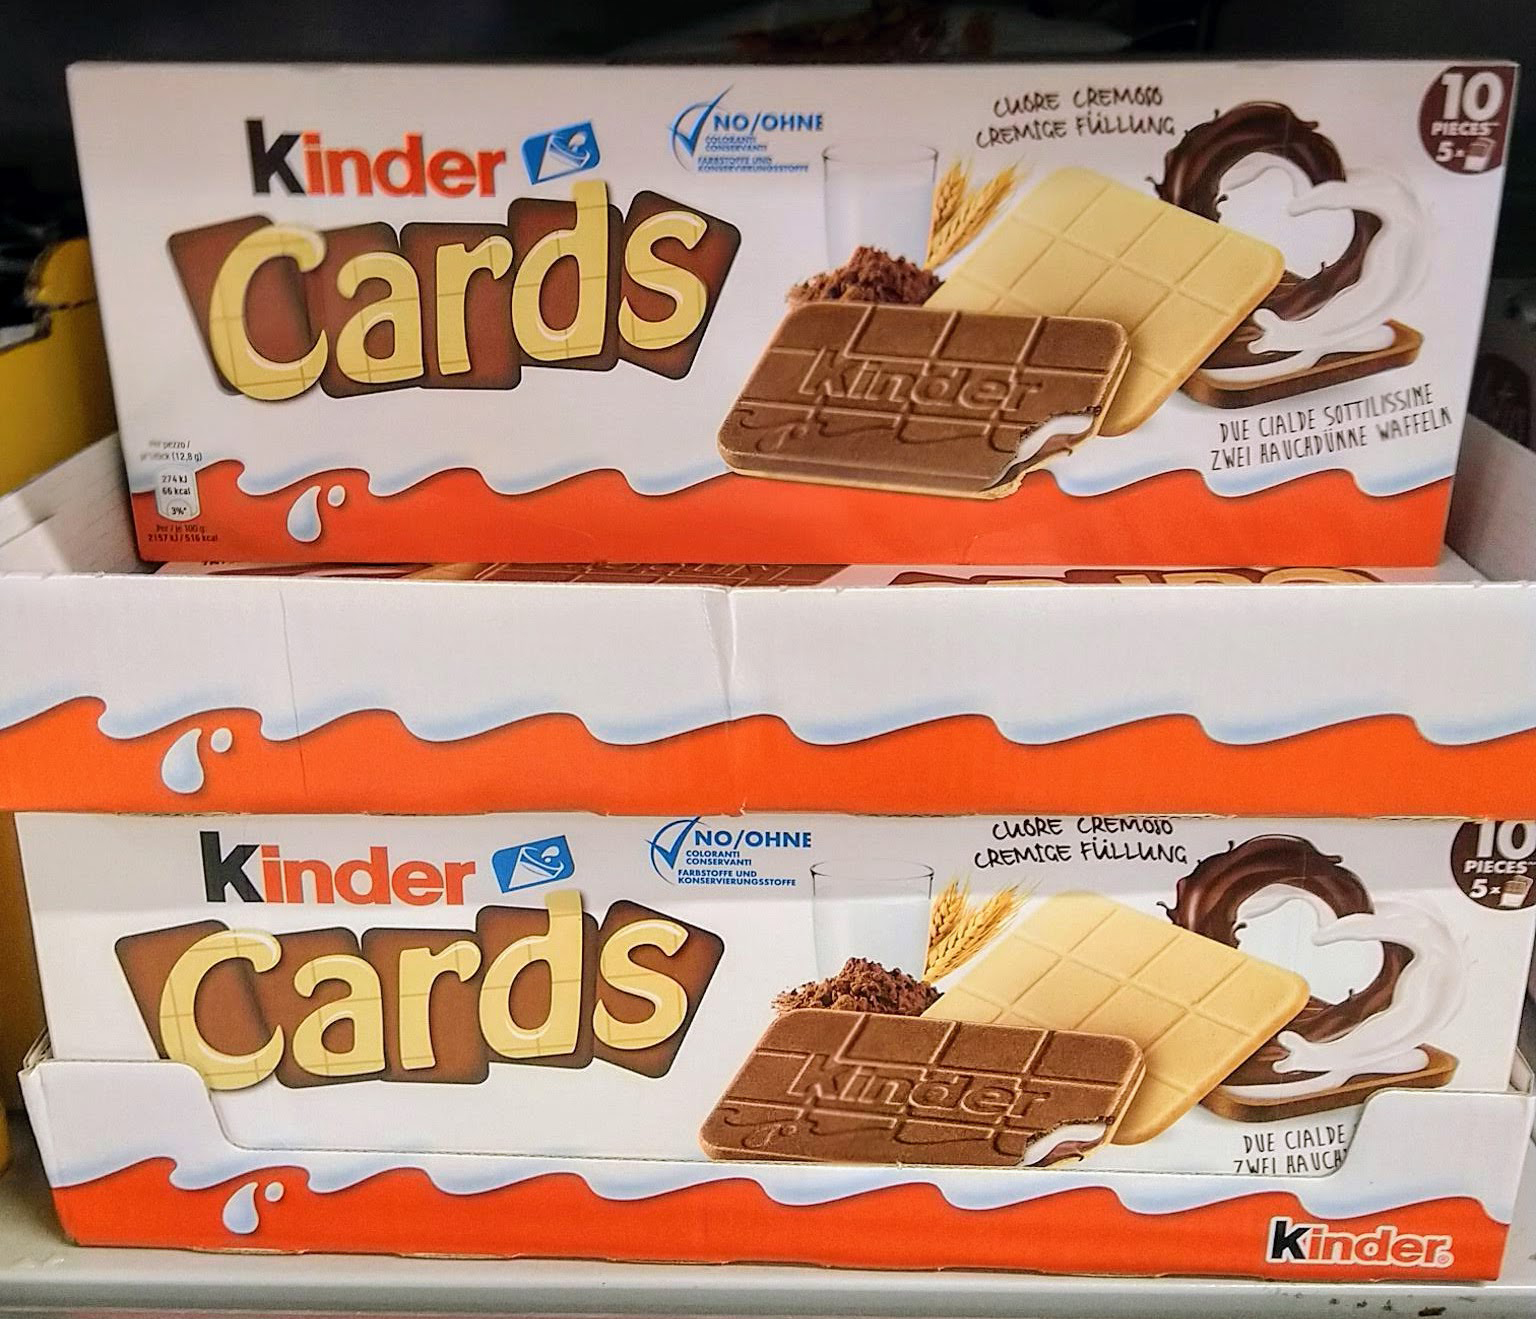 Ferrero Kindertag 2021: ein Kinder-Produkt gratis - von Kinderschokolade bis Schoko-Bons: Der Kaufpreis wird erstattet. Die Aktion findet nur am 18.09.2021 statt.